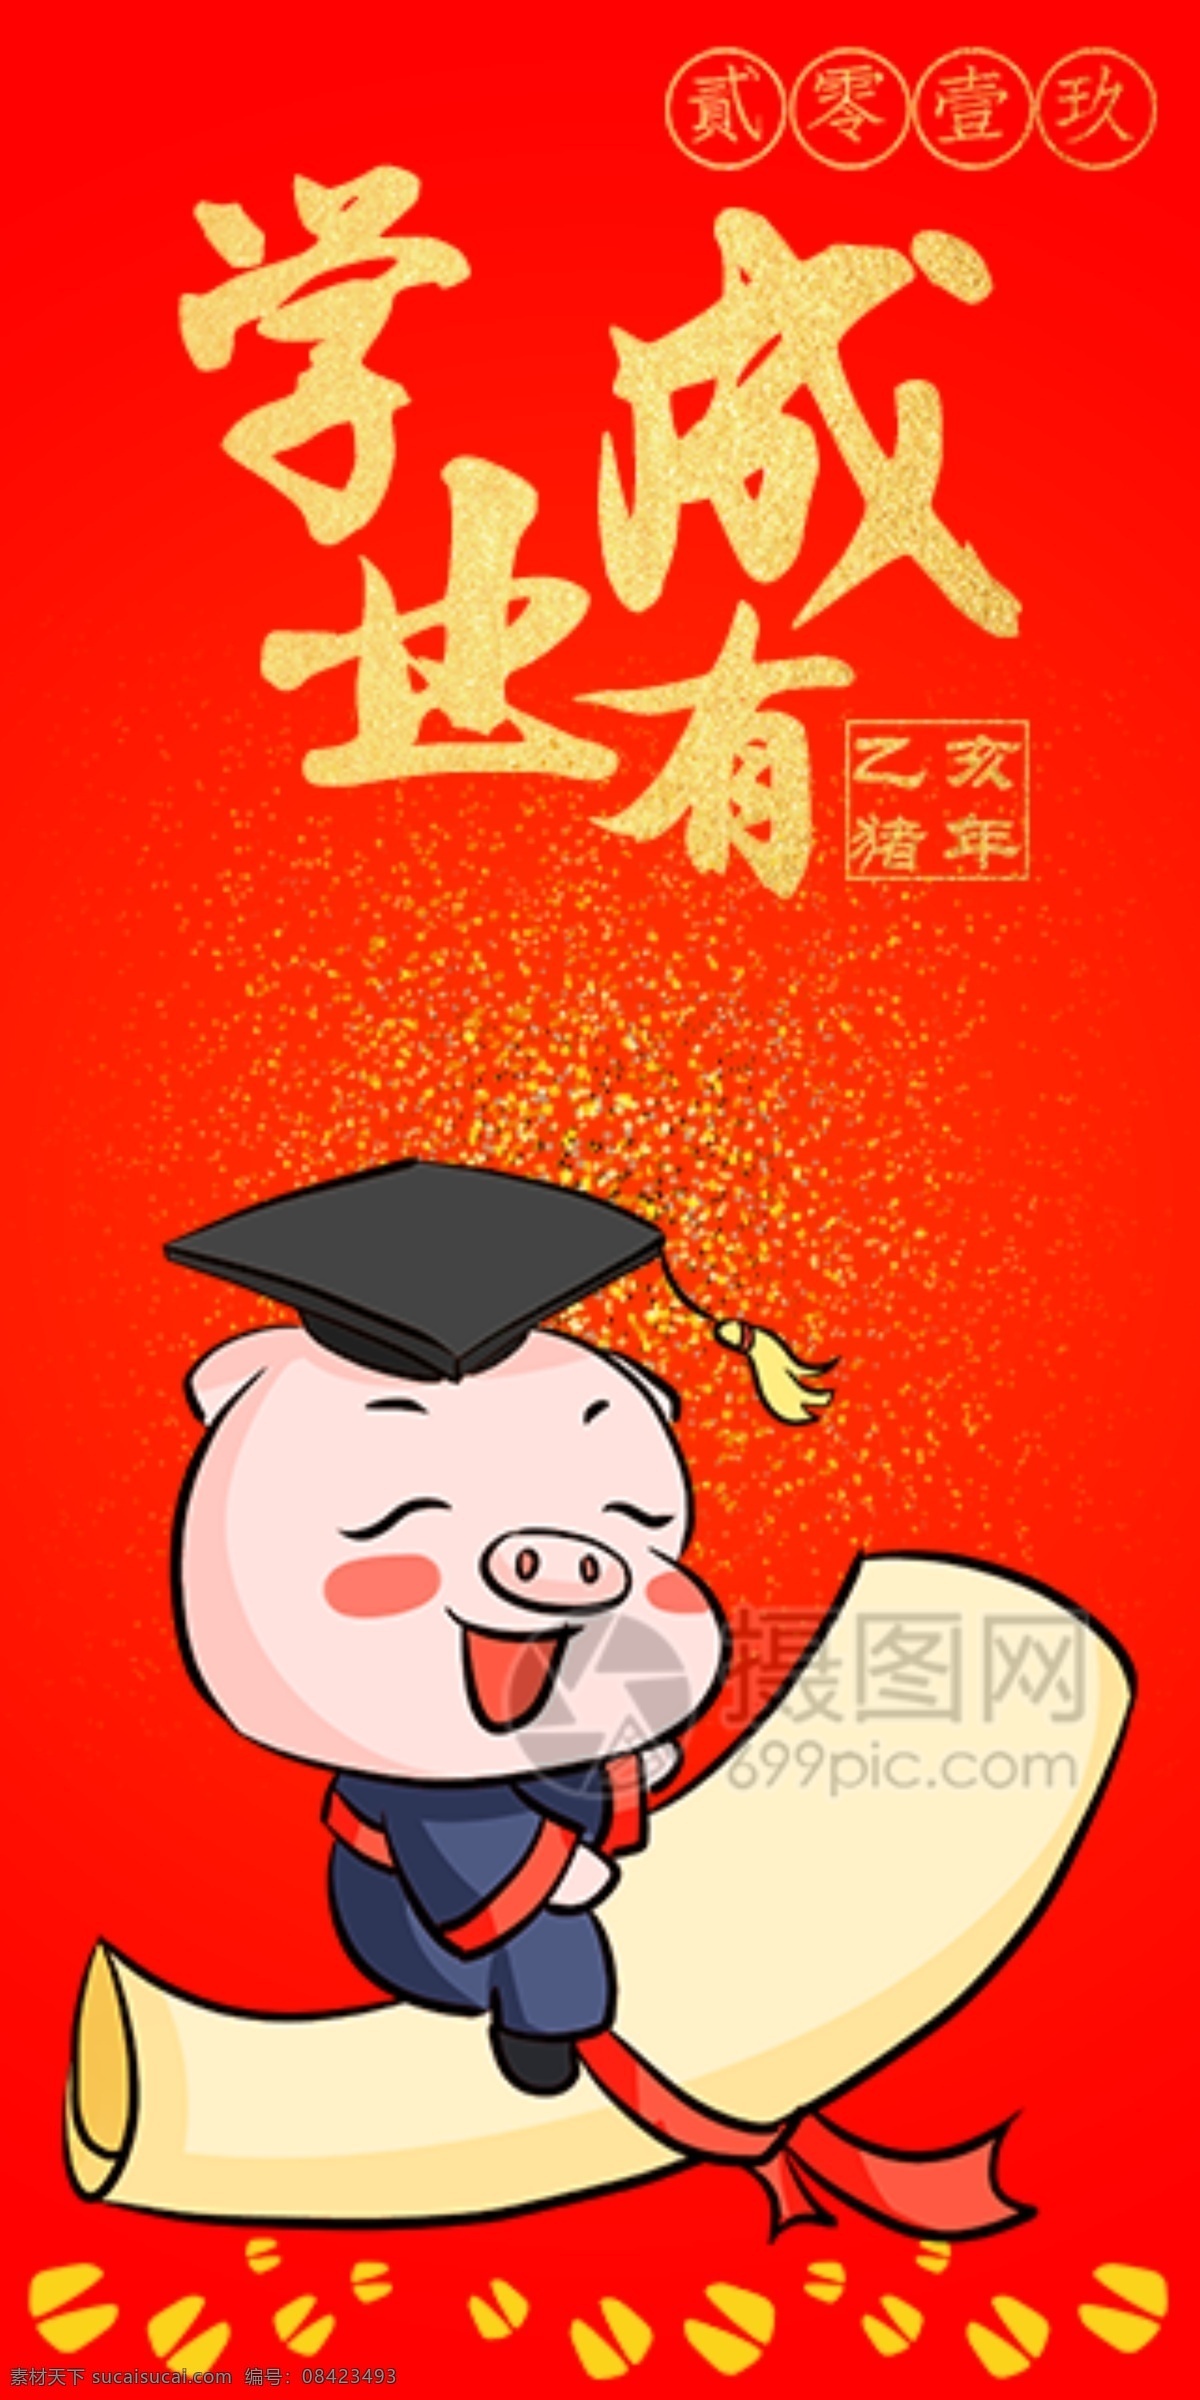 2019 猪年 新春 红包 学业有成 猪年红包 新春红包 红包素材 红包设计 新年红 新年红包